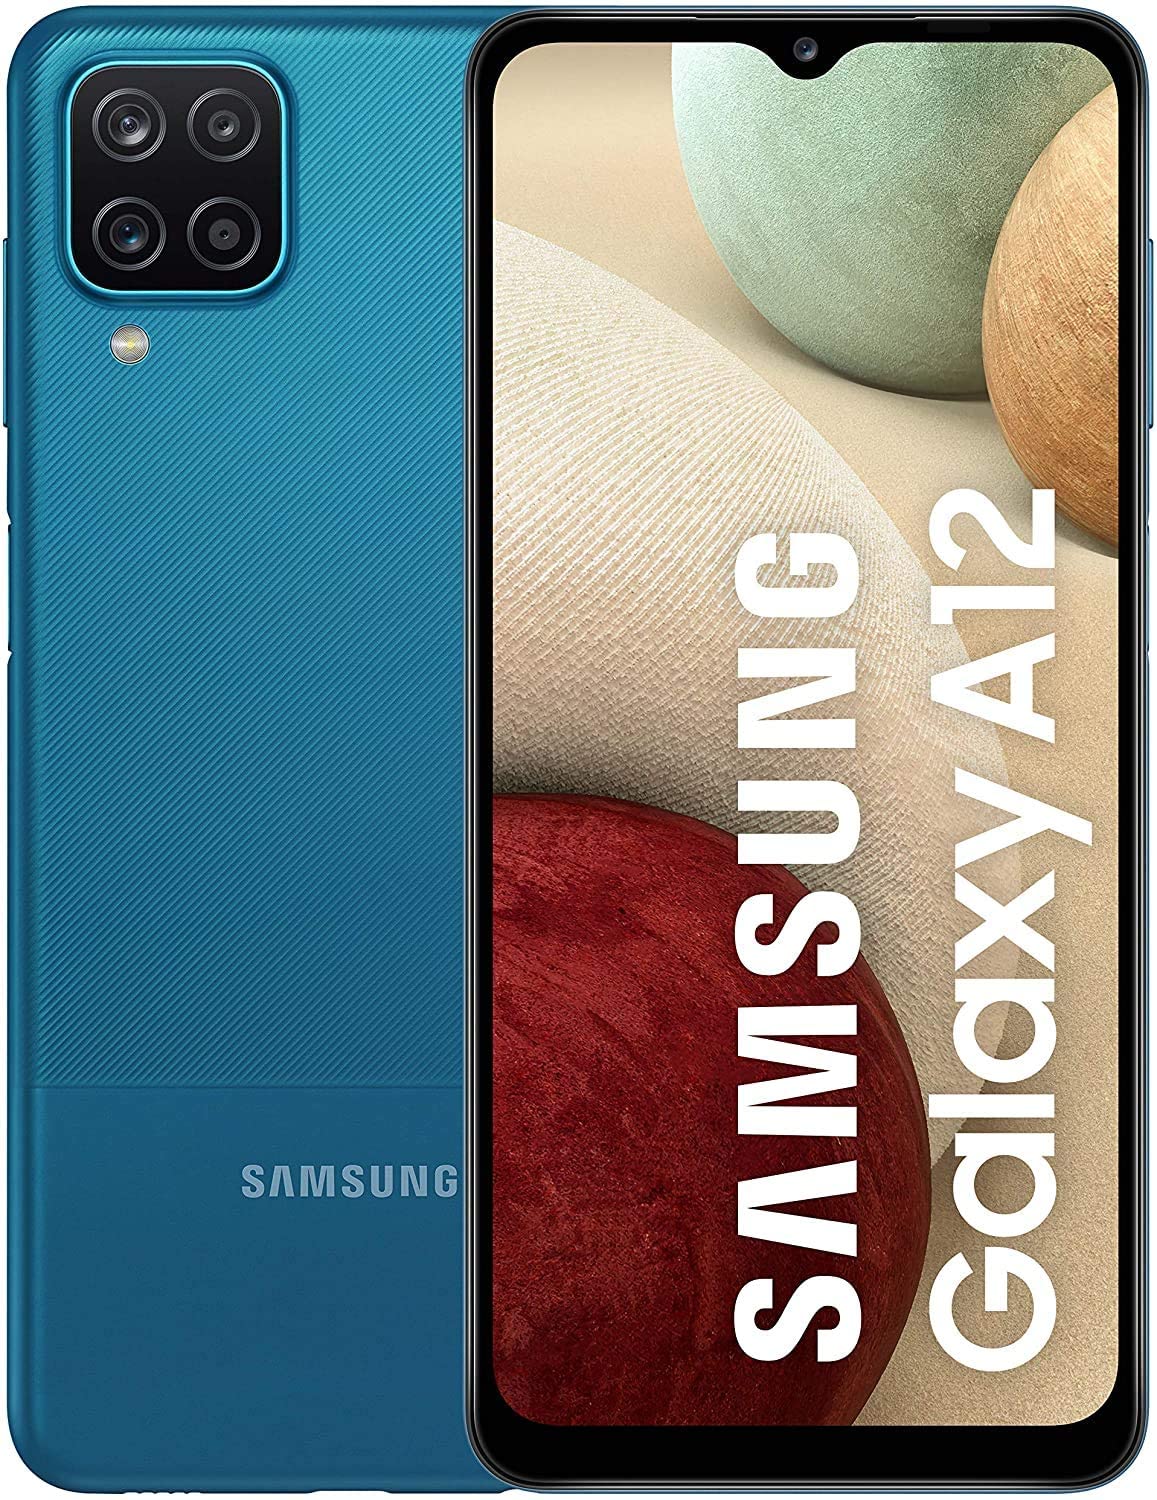 Samsung Galaxy A12 Dual Sim, 64GB, 4GB RAM, 4G LTE